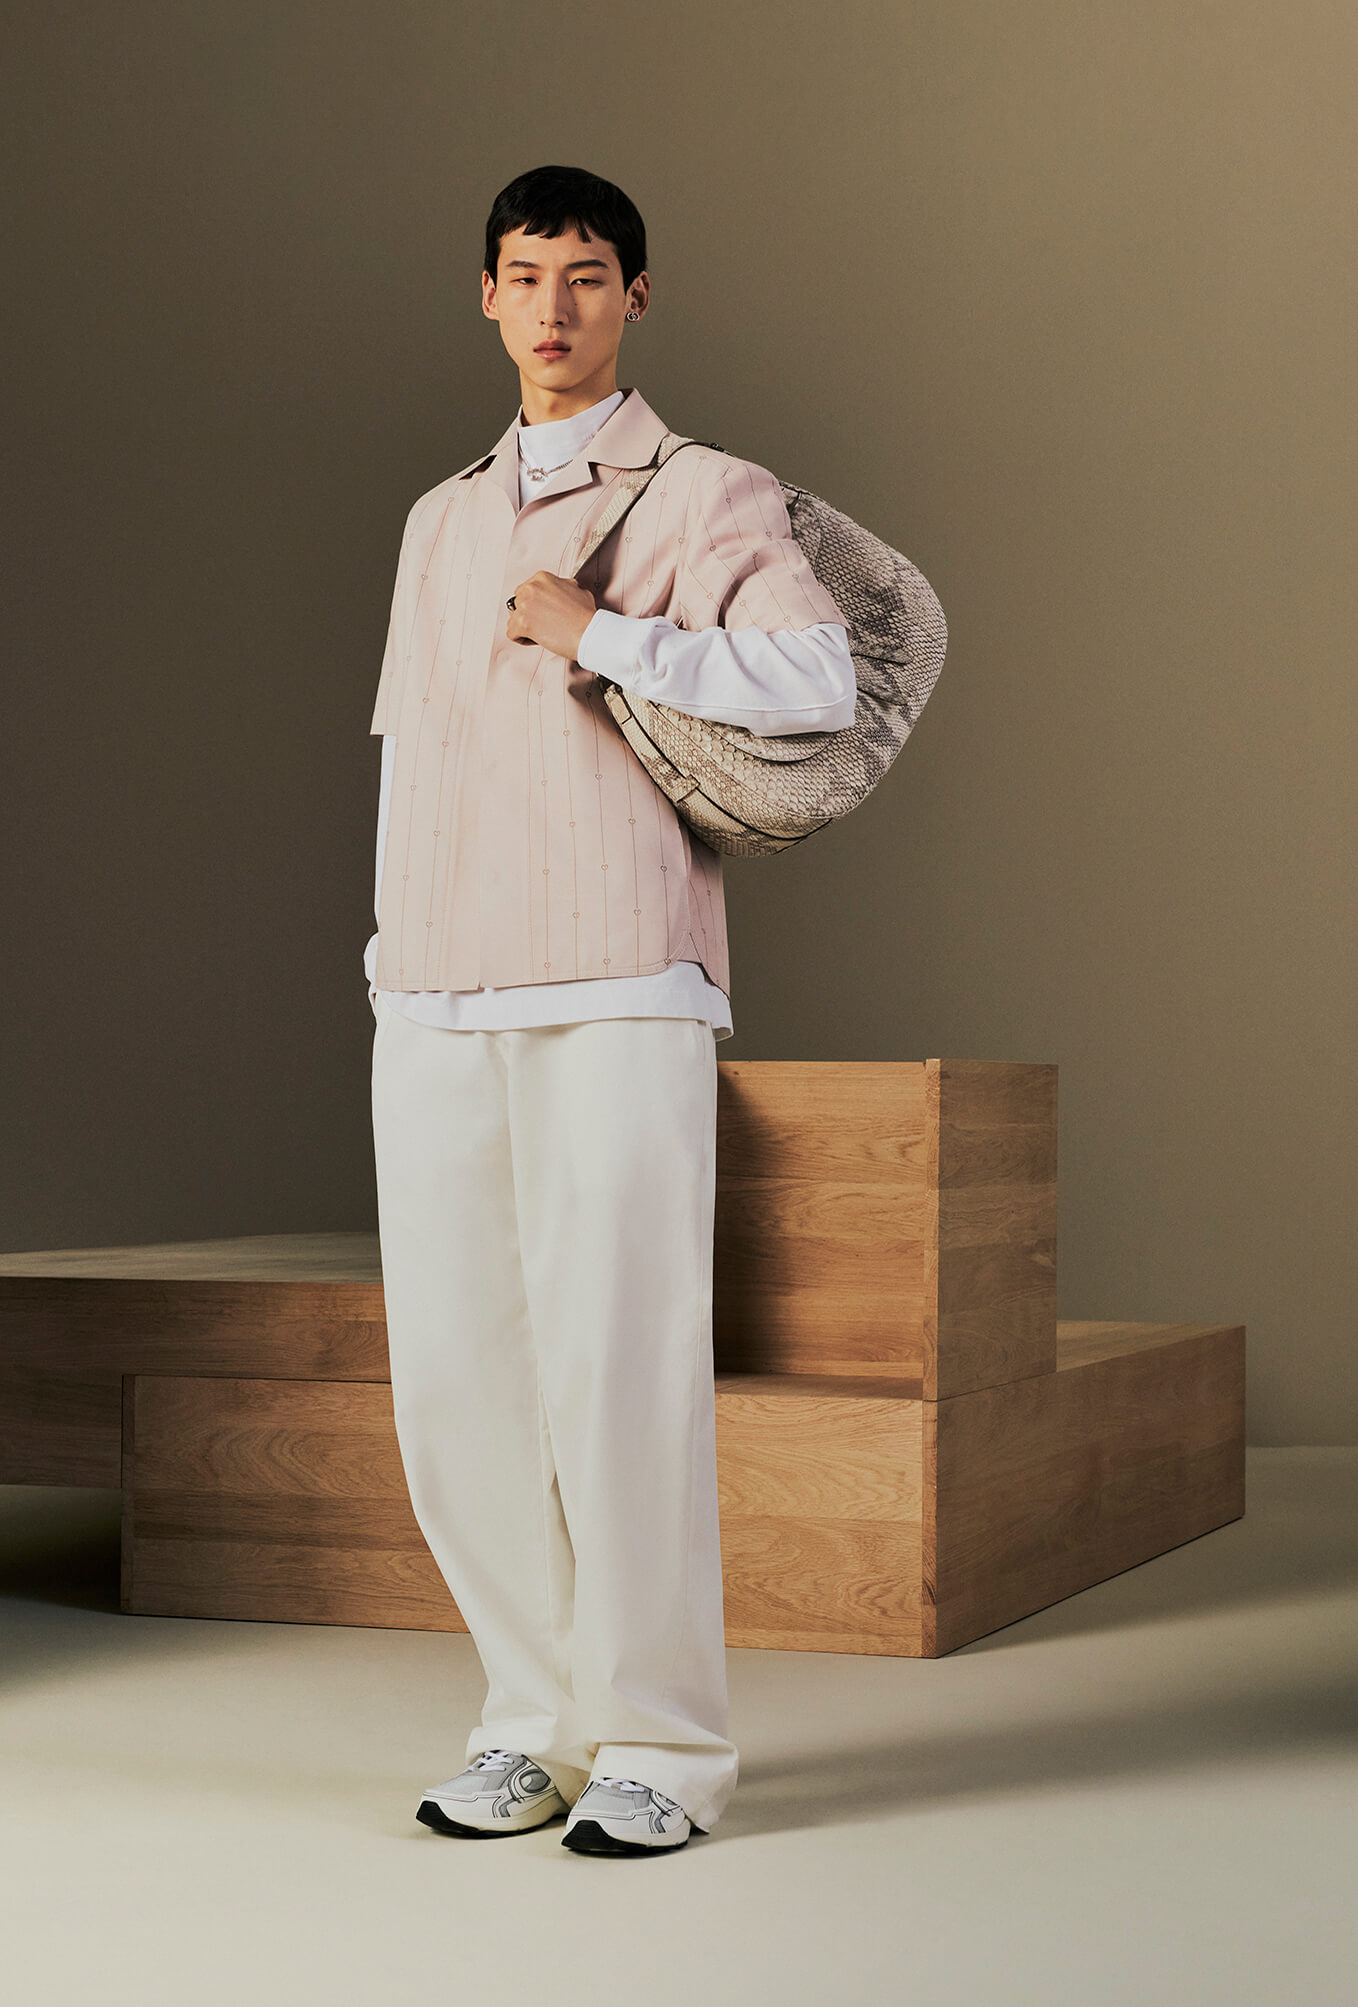 Dior Men Presents Its Spring 2022 Collection - A&E Magazine